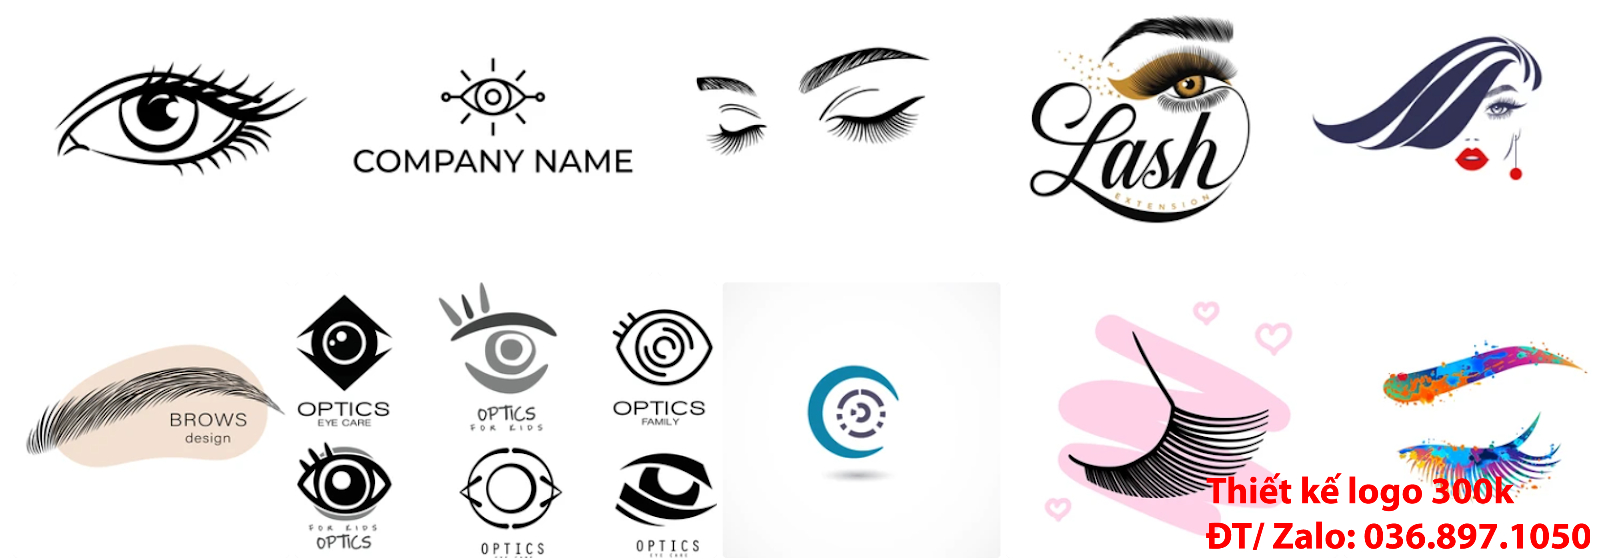 Mẫu logo thẩm mỹ lông mi mắt đẹp miễn phí chất lượng uy tín và chuyên nghiệp